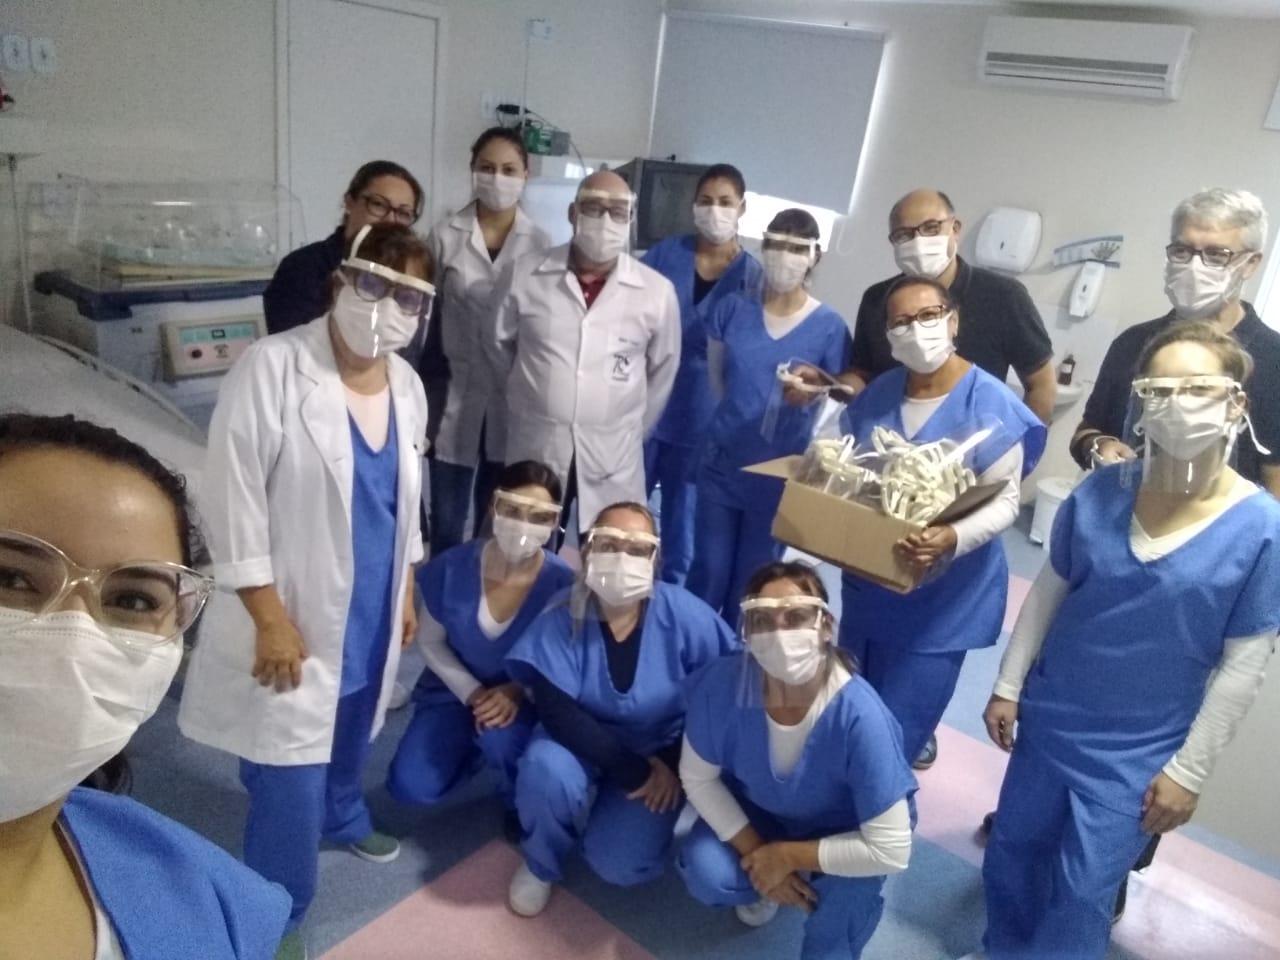 equipe médica uniformizada em hospital com os protetores faciais